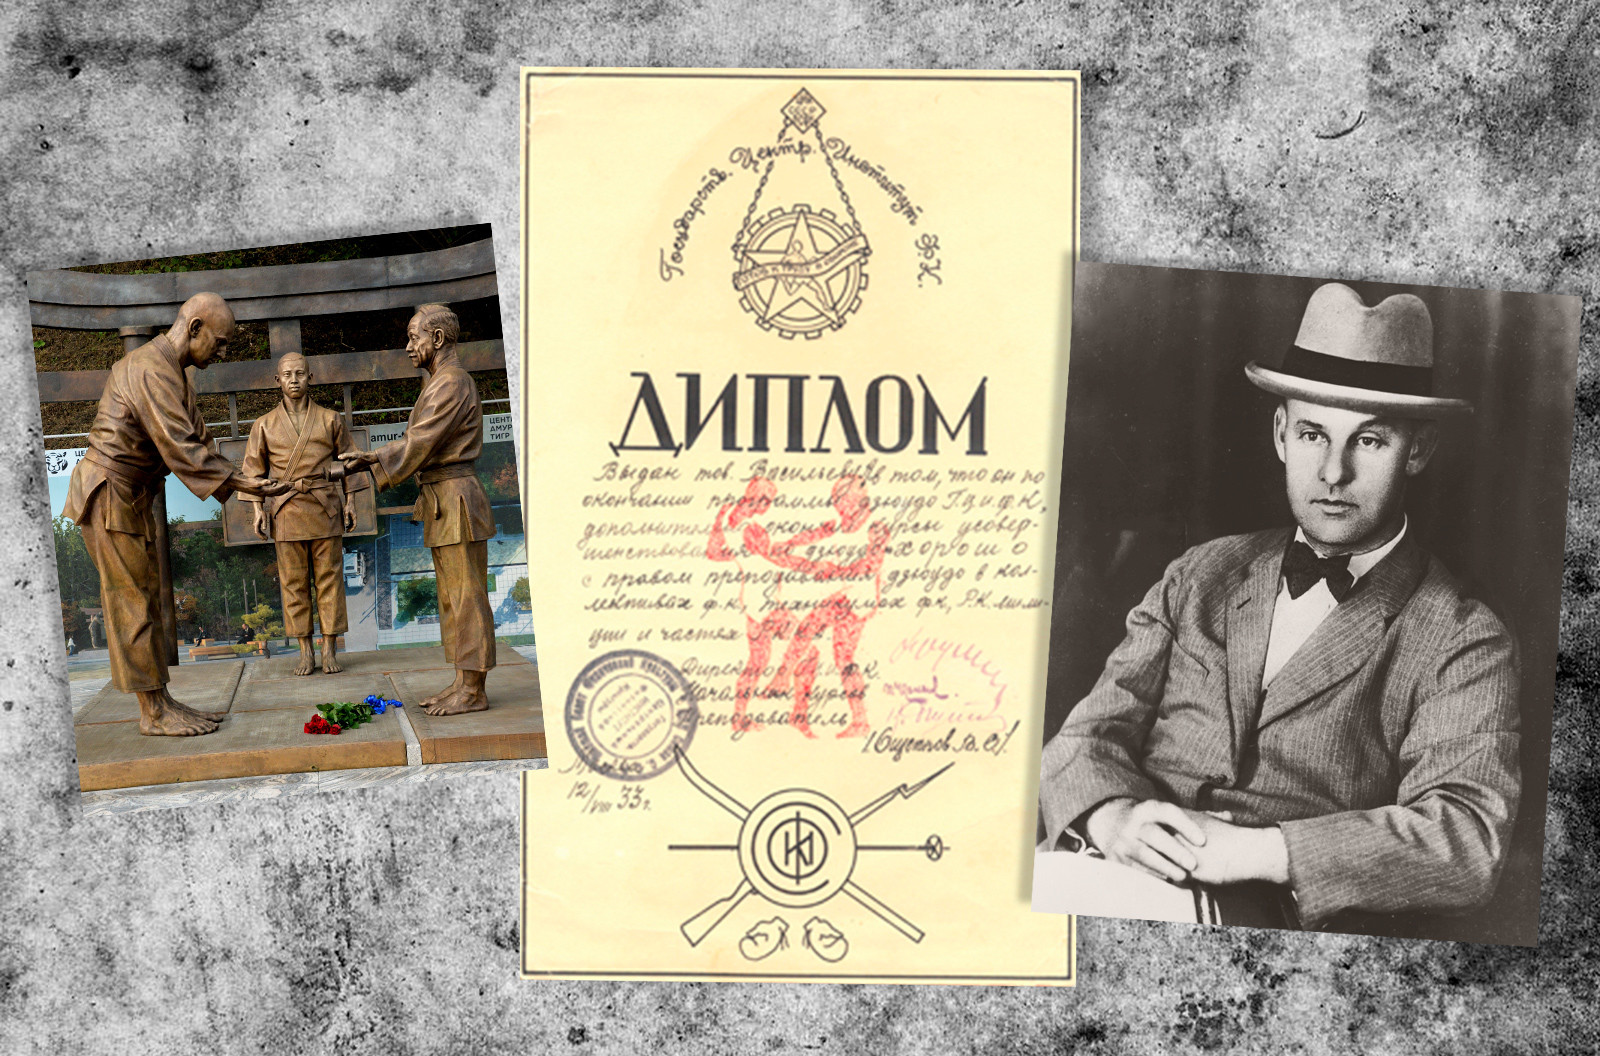 左：ワシリー・オシェプコフの記念像。中央：ワシリー・オシェプコフがサインした卒業証書。右：ワシリー・オシェプコフ。